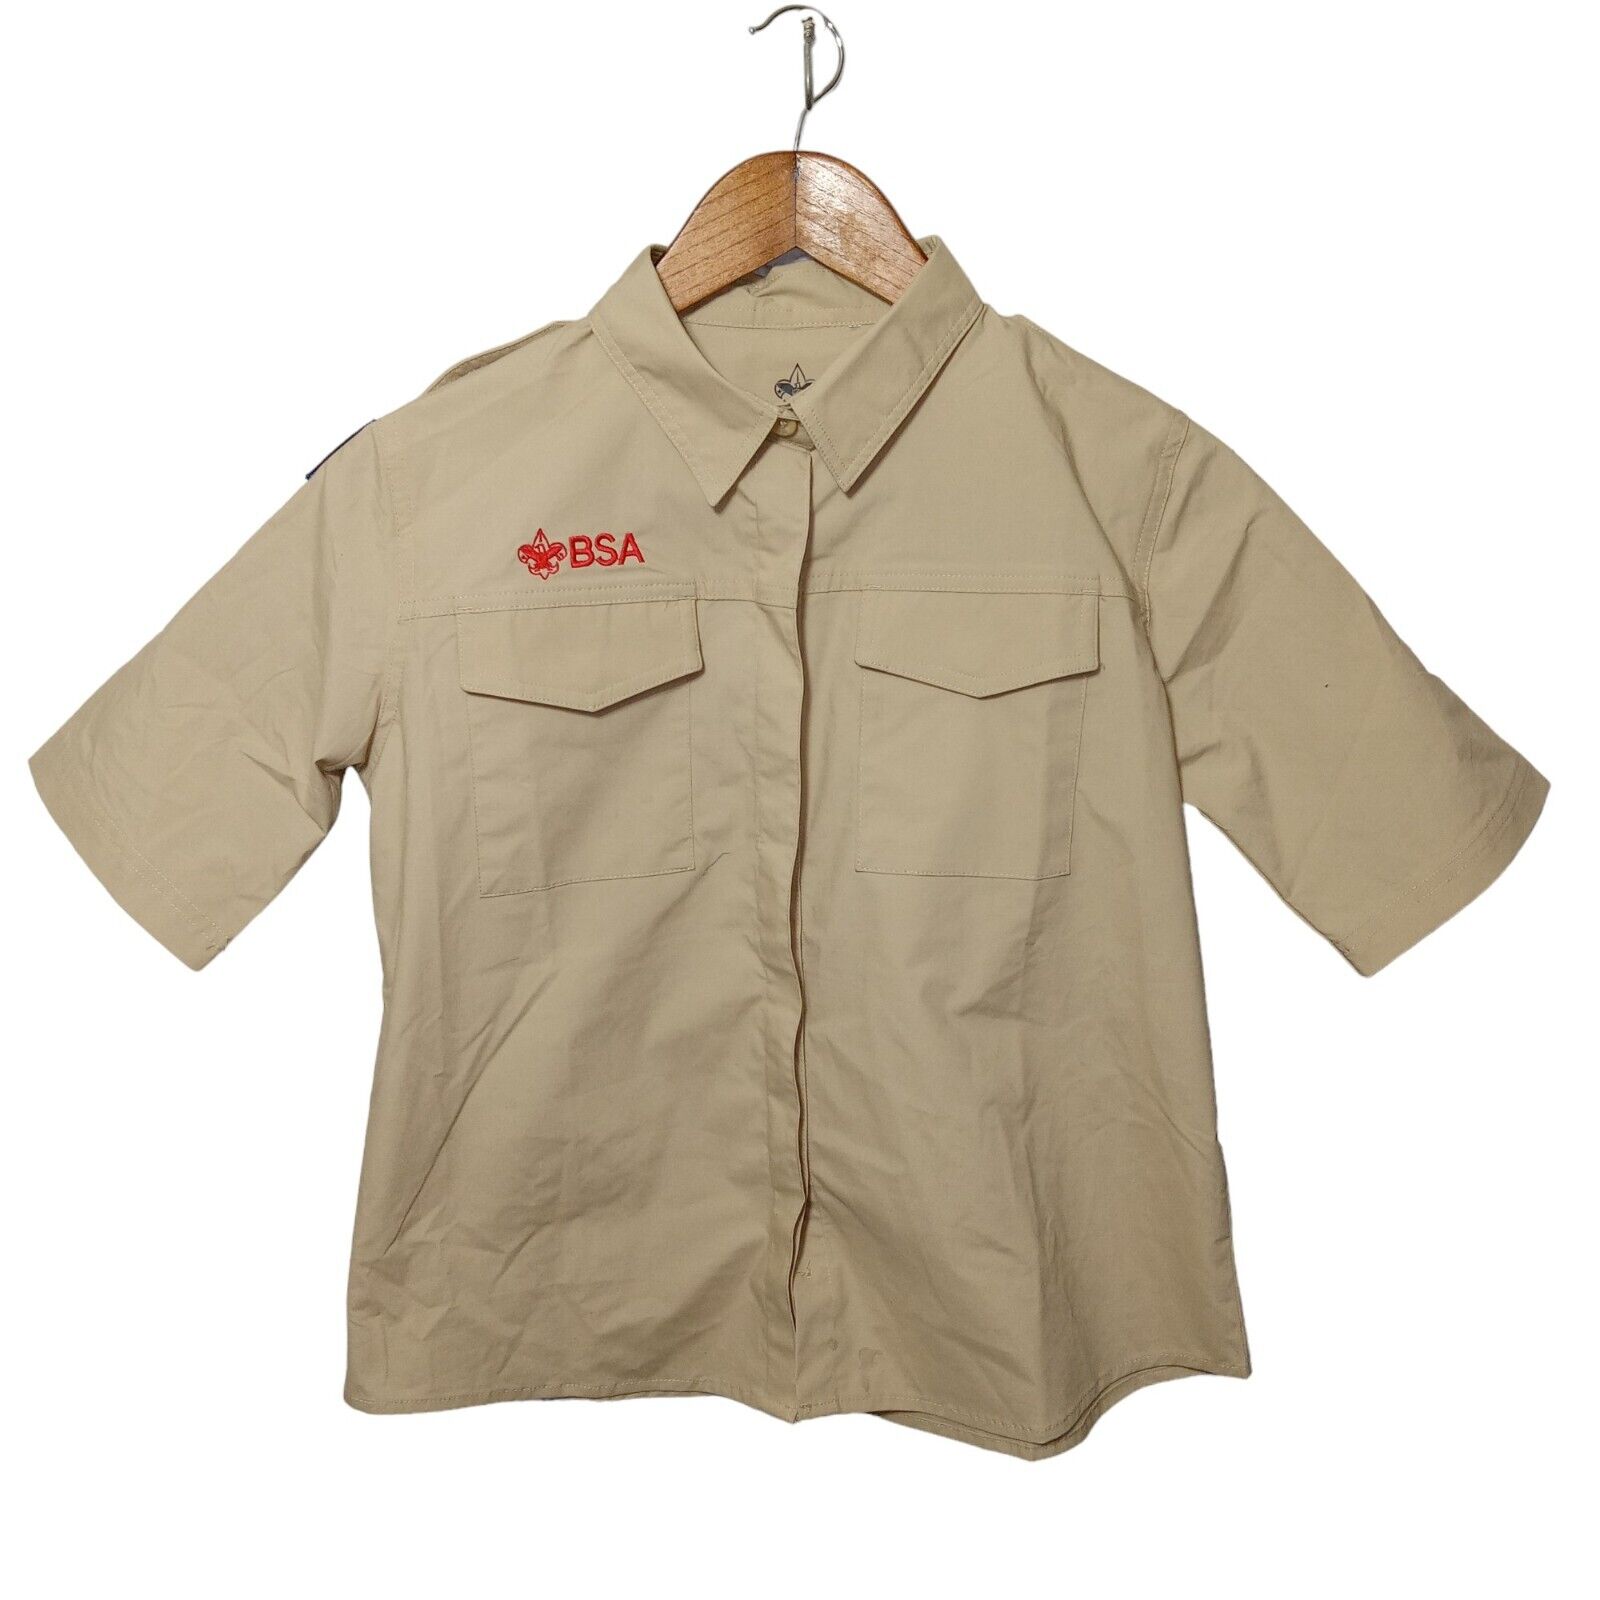 BSA Boy Scouts Shirt Girls XL Beige Patches Uniform Short Sleeve